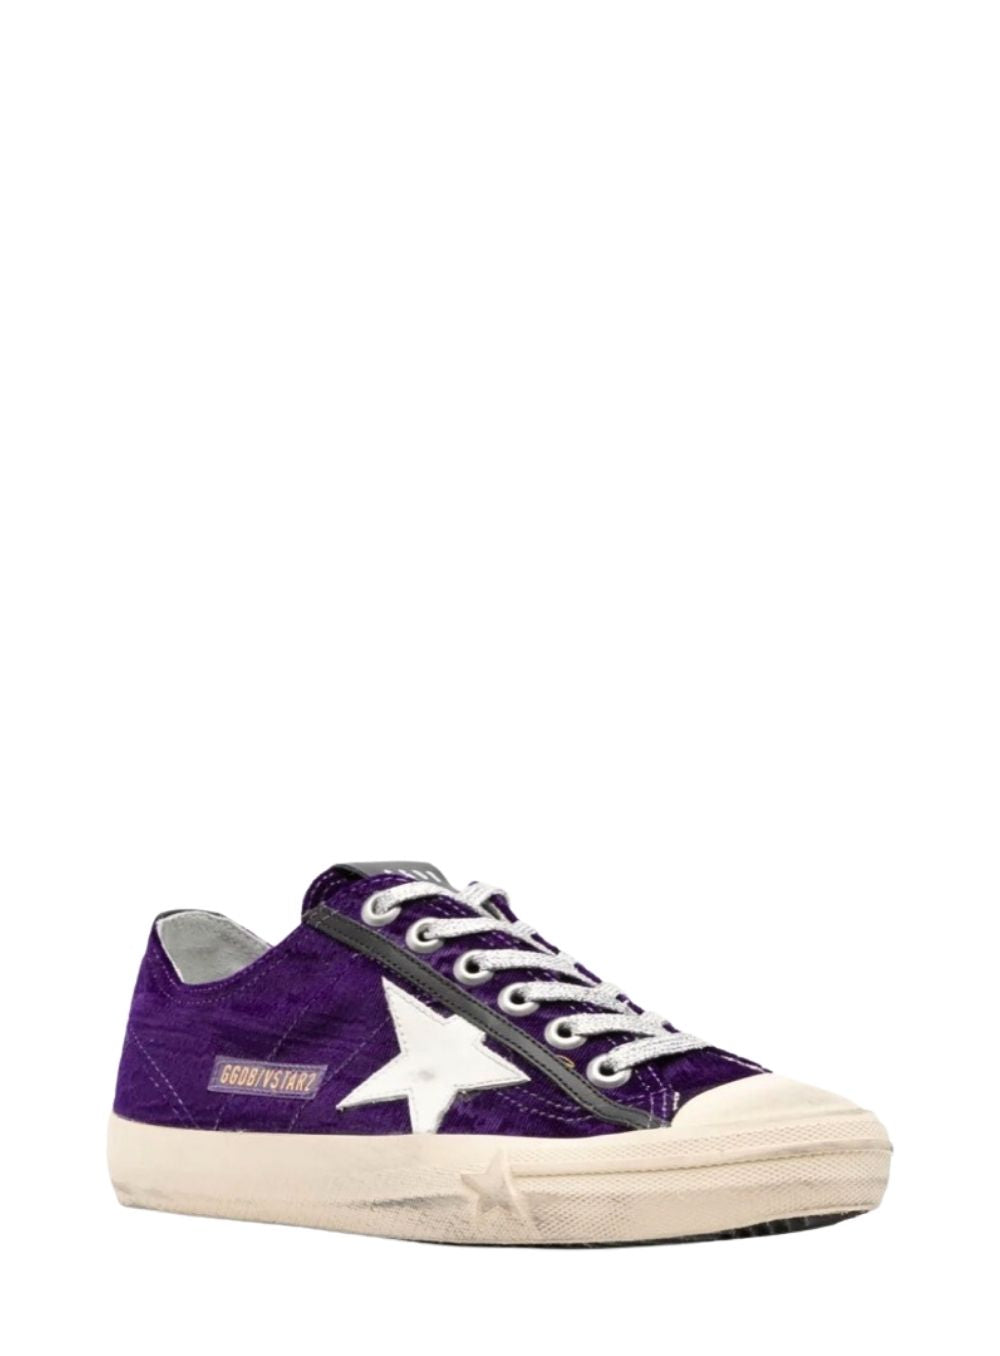 GOLDEN GOOSE | V-Star Purple Velvet Sneakers